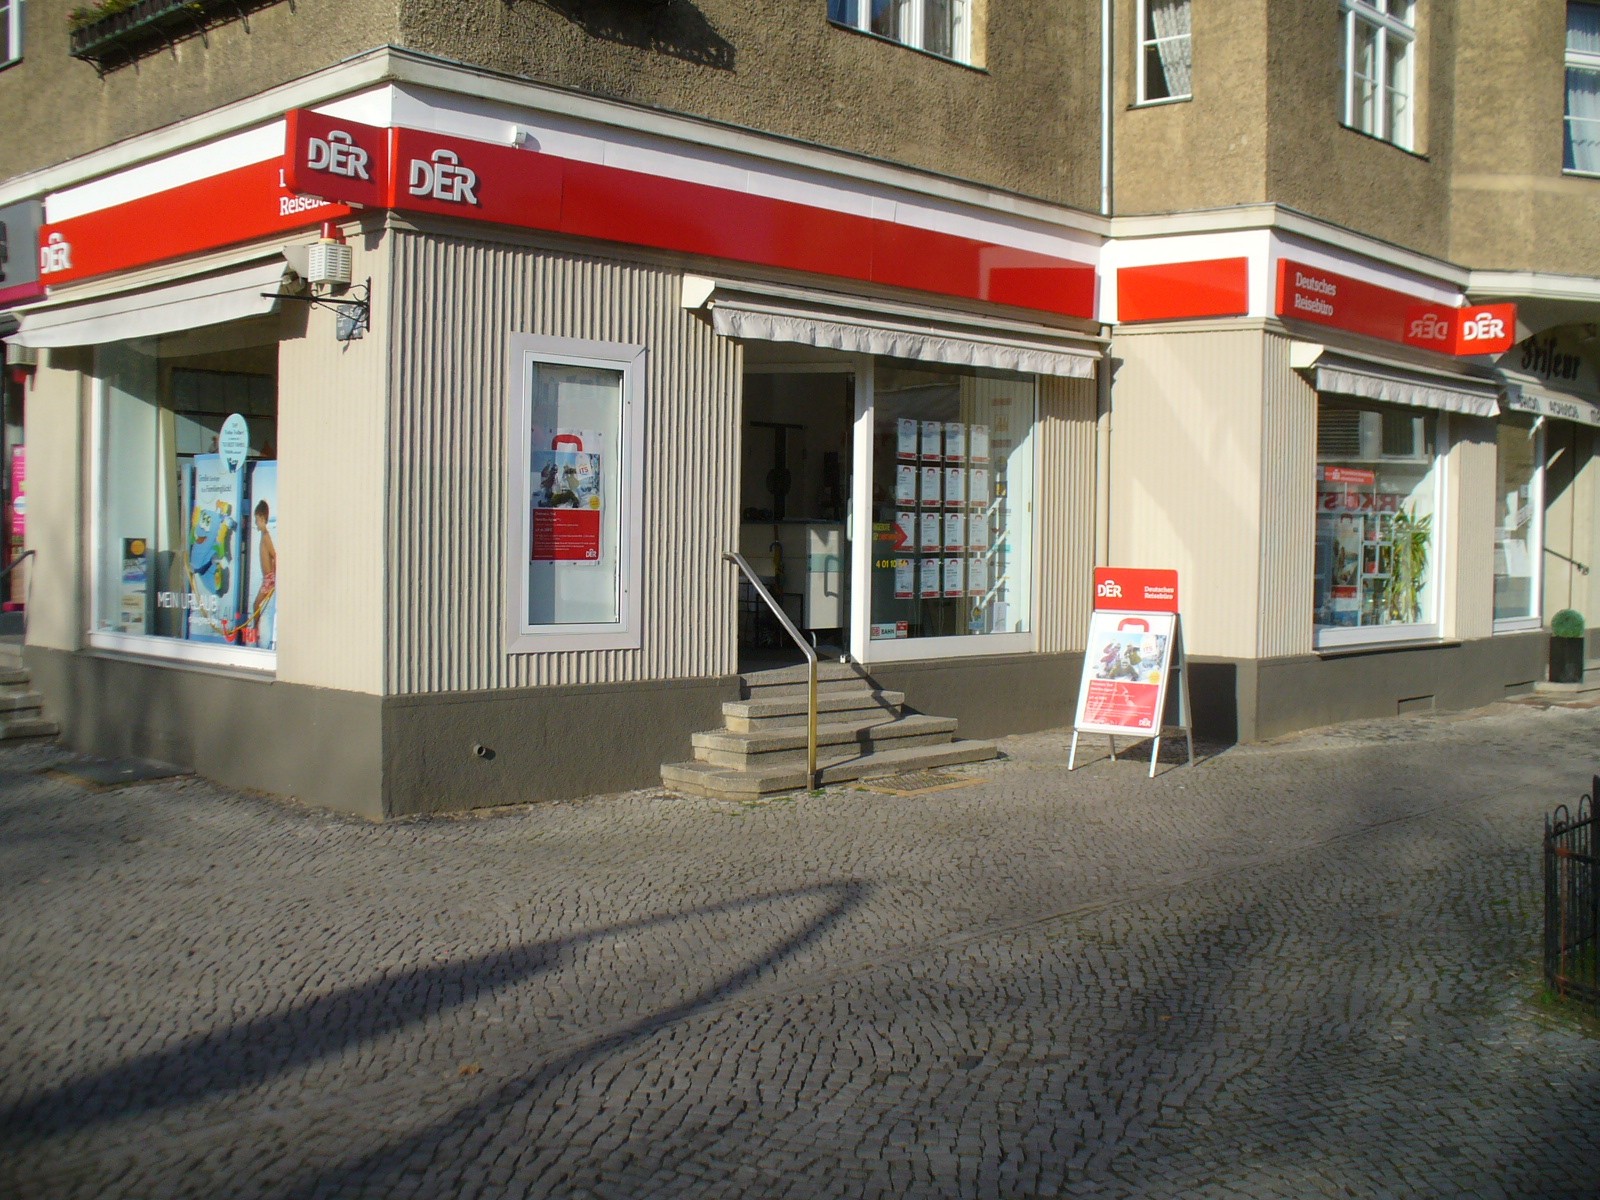 DERTOUR Reisebüro, Ludolfingerplatz 4 in Berlin